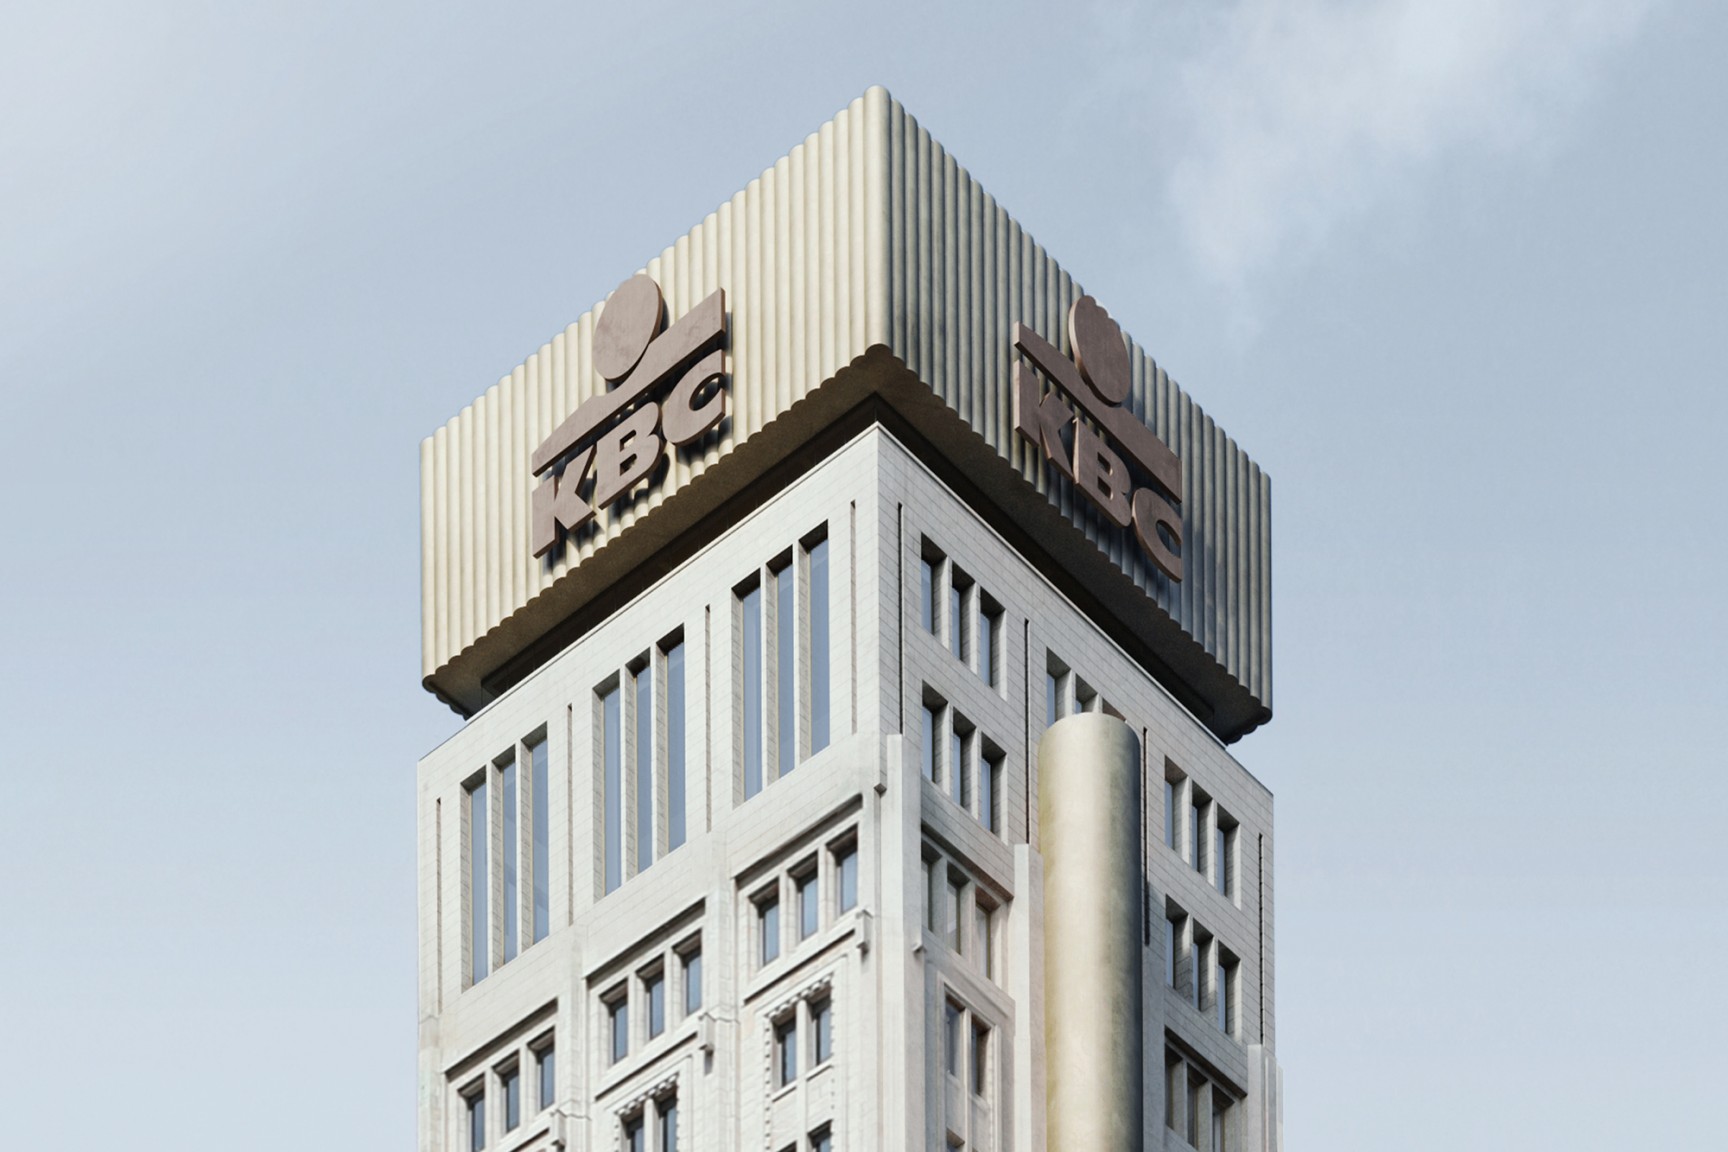 KBC-toren Antwerpen